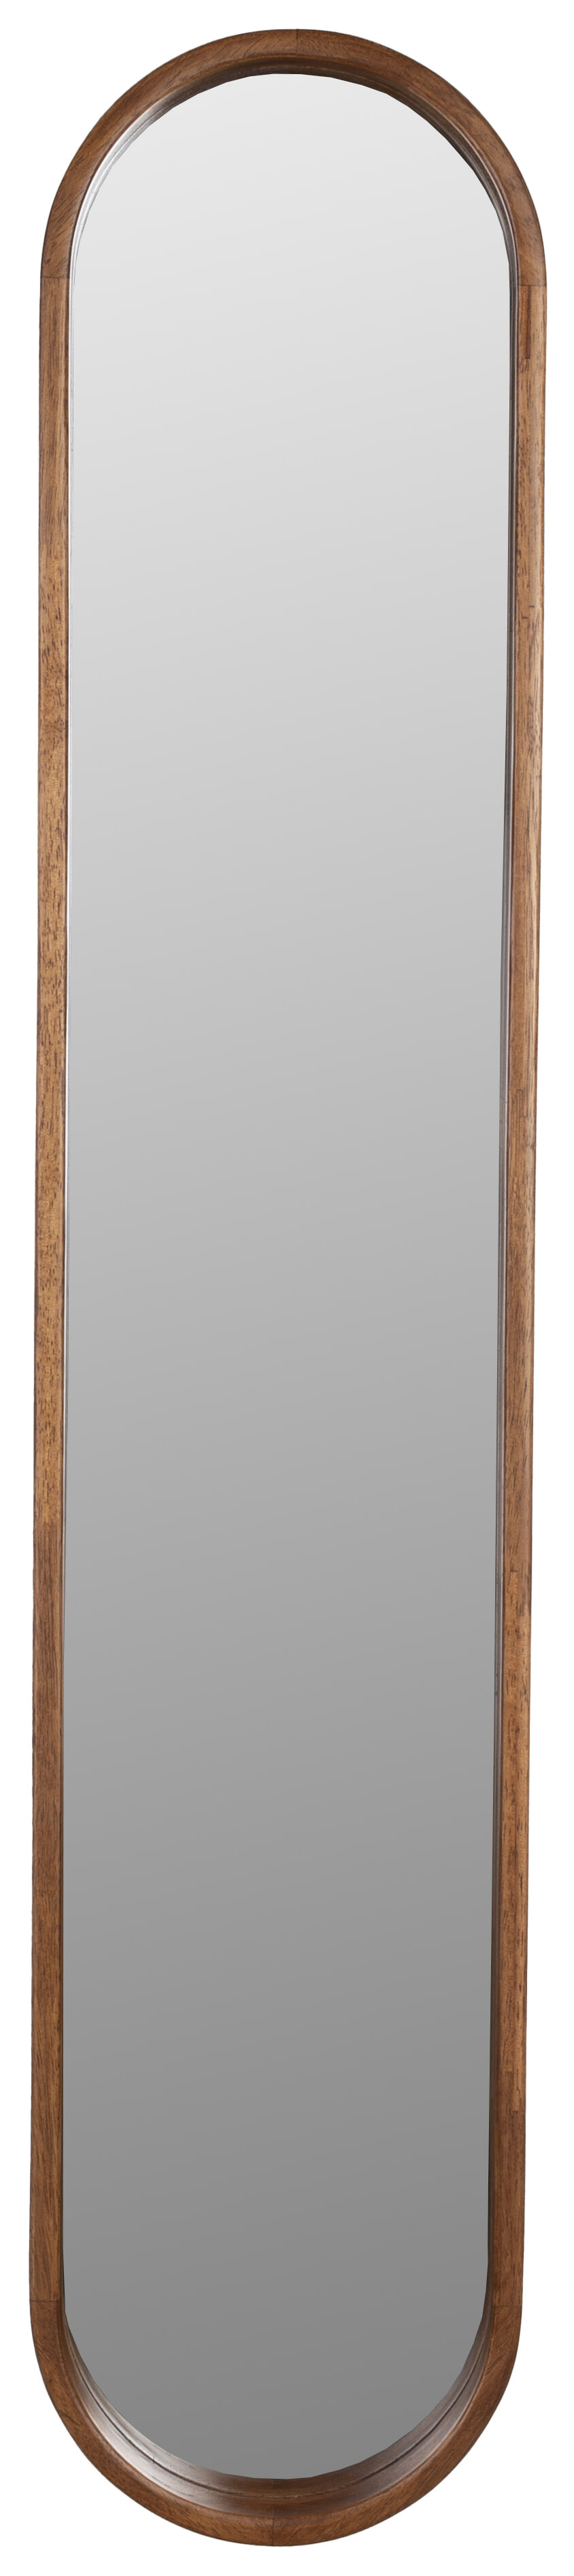 ZILT Ovale Spiegel 'Rania' Rubberhout, 120 x 24cm